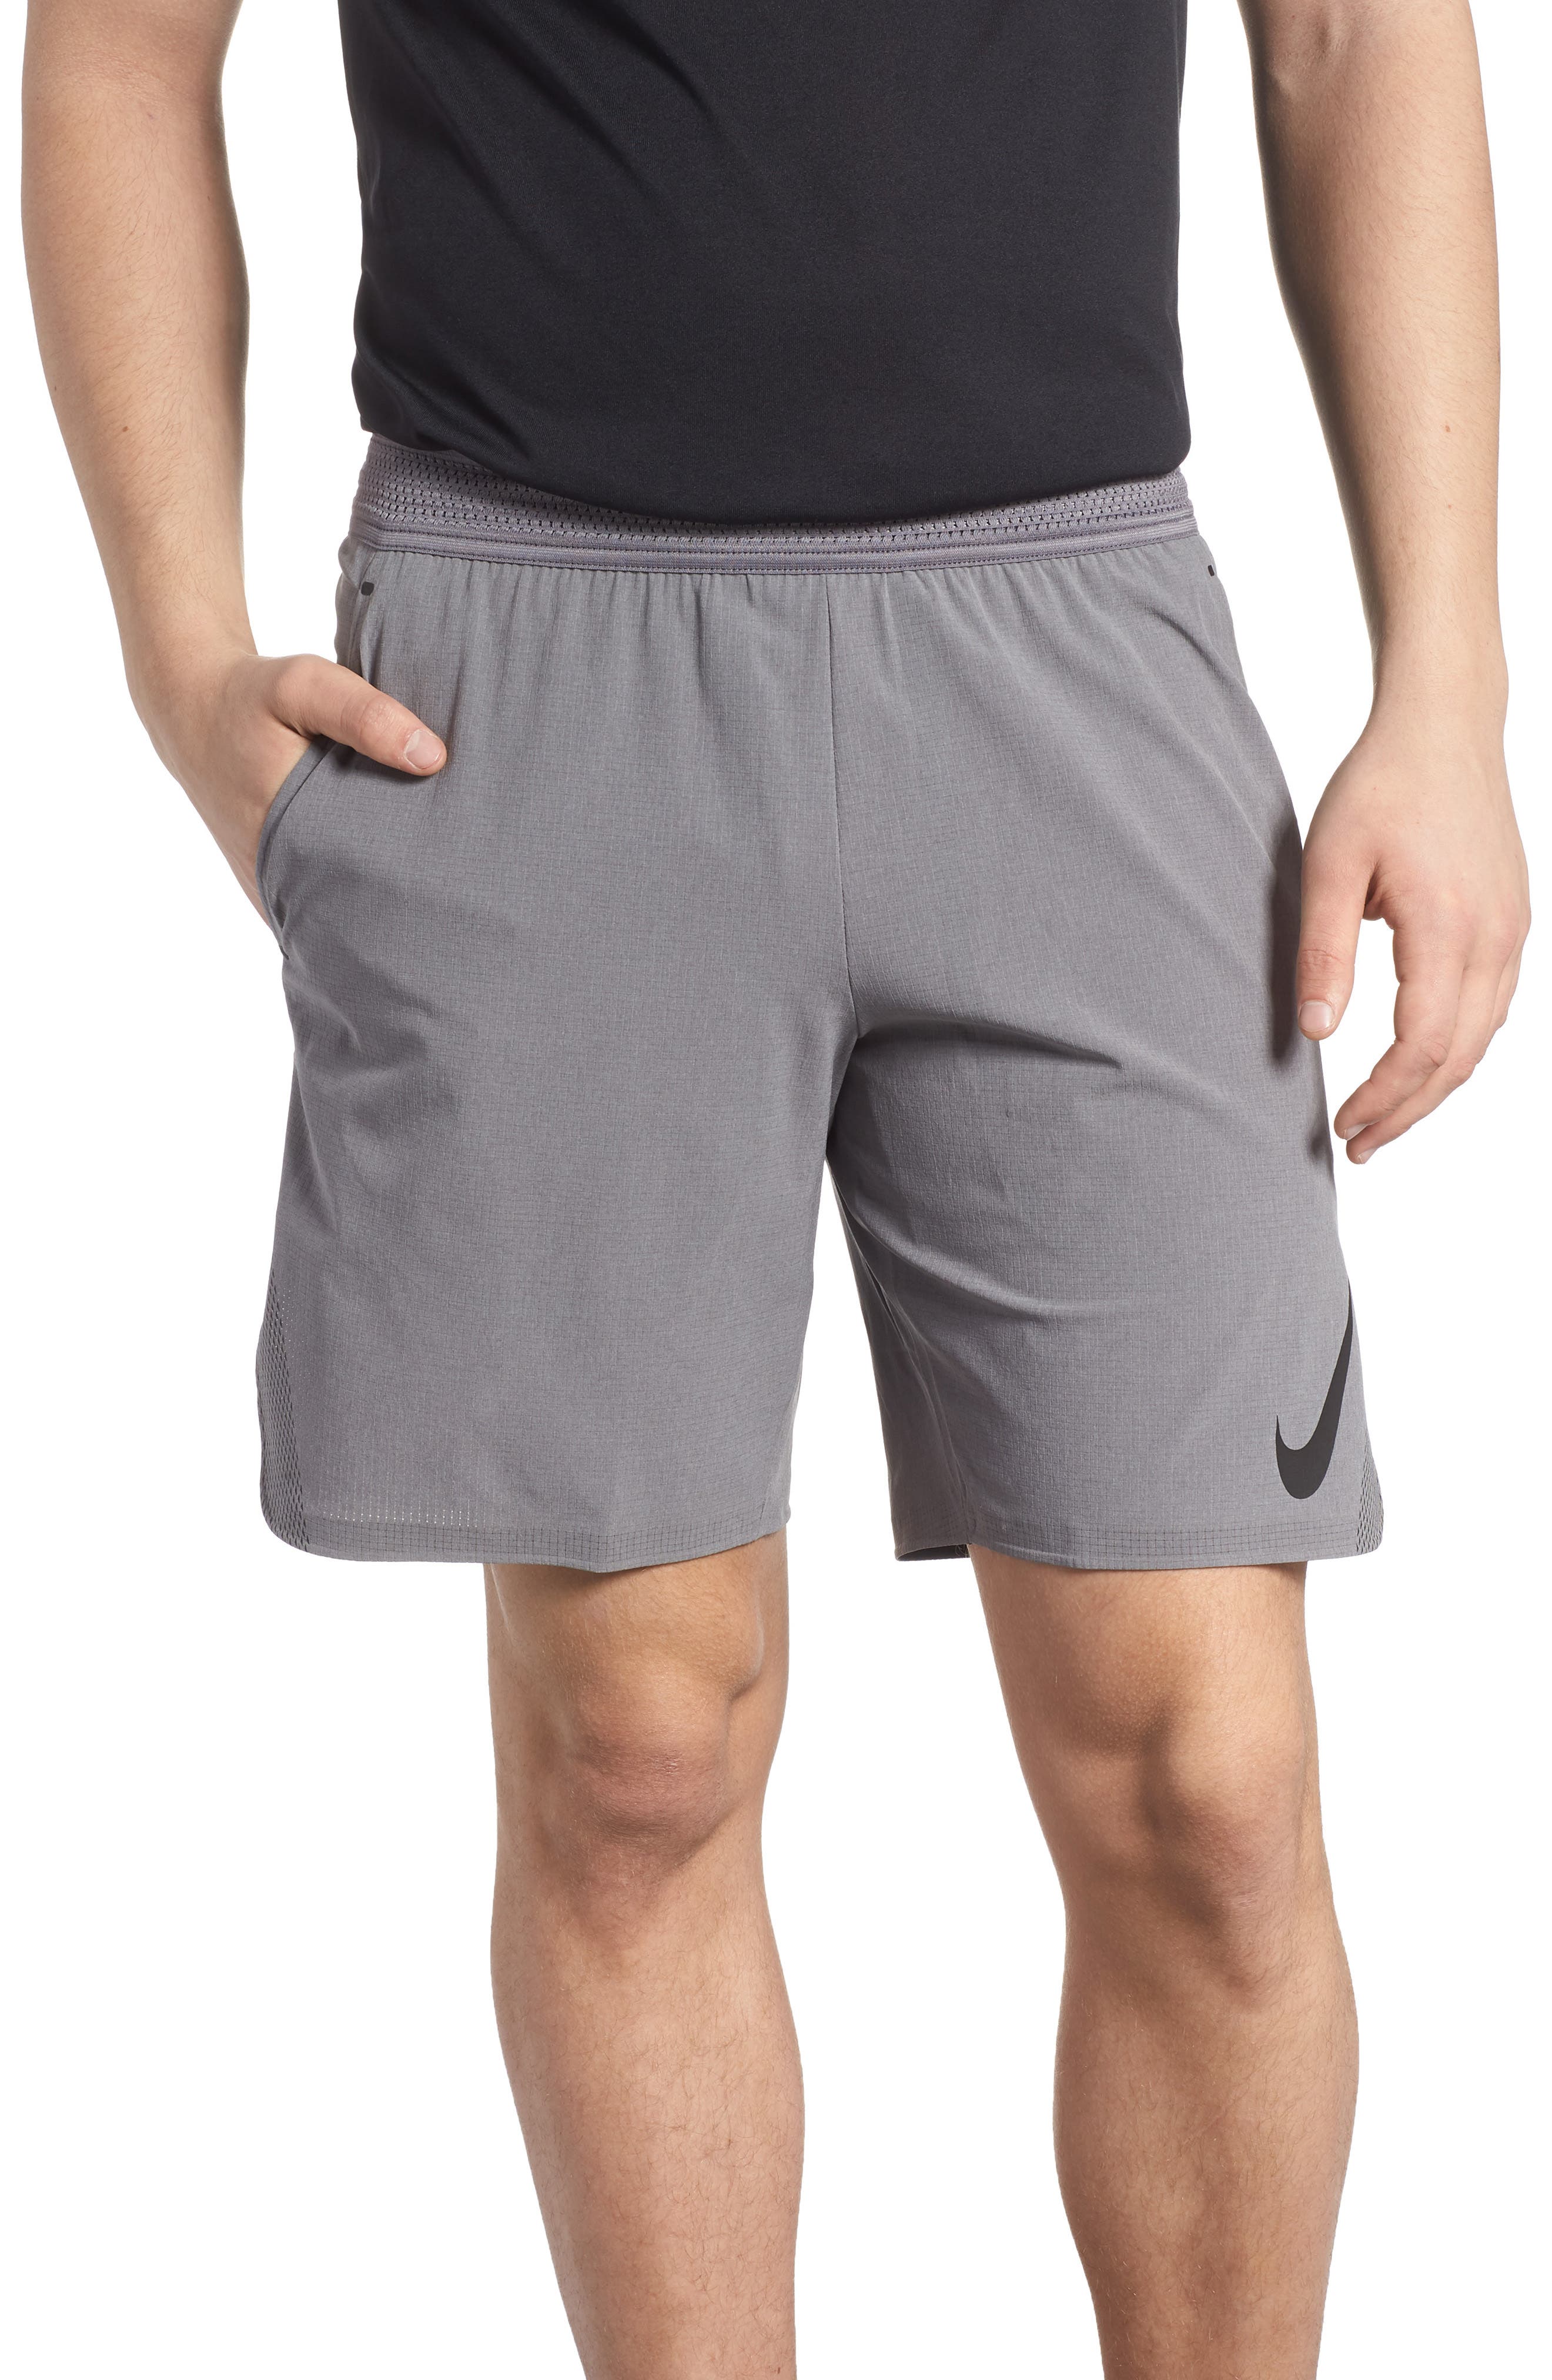 flex repel shorts